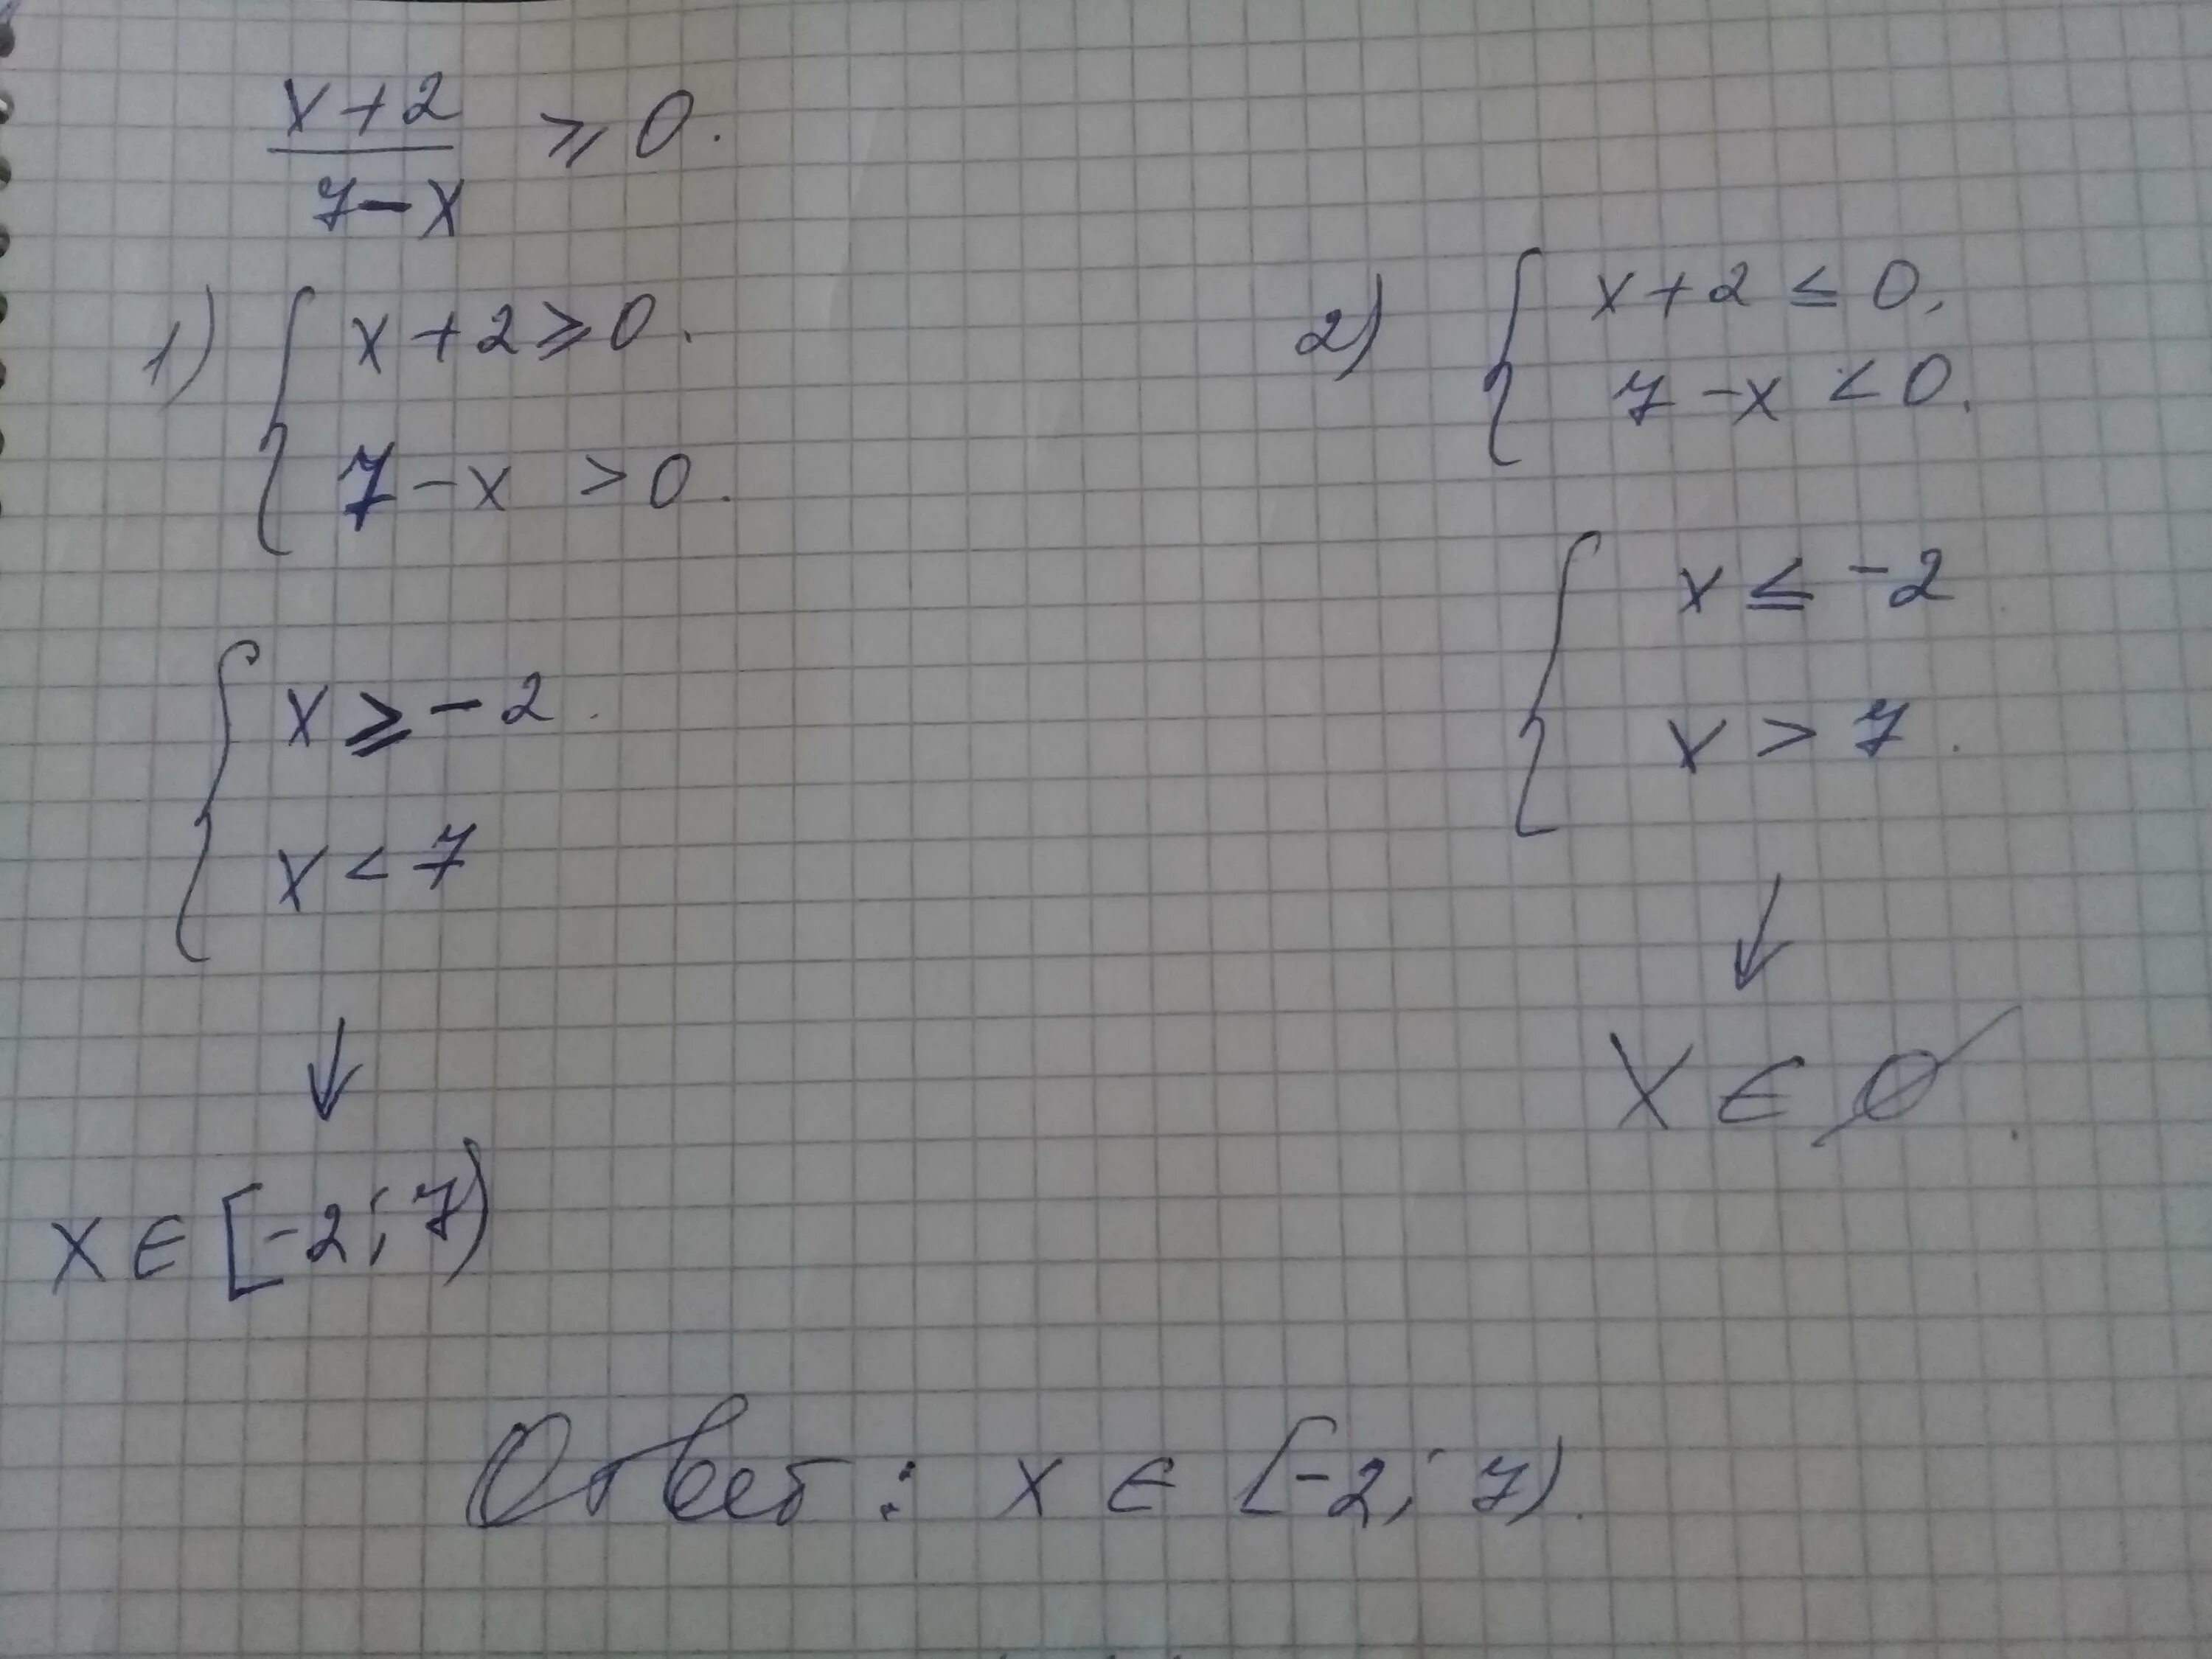 4x 2 2х 1 1 2х. X 2 7x 10 больше или равно нулю. 7x-x2 больше или равно 0. X больше или равно 0. 7x-x2 больше 0.